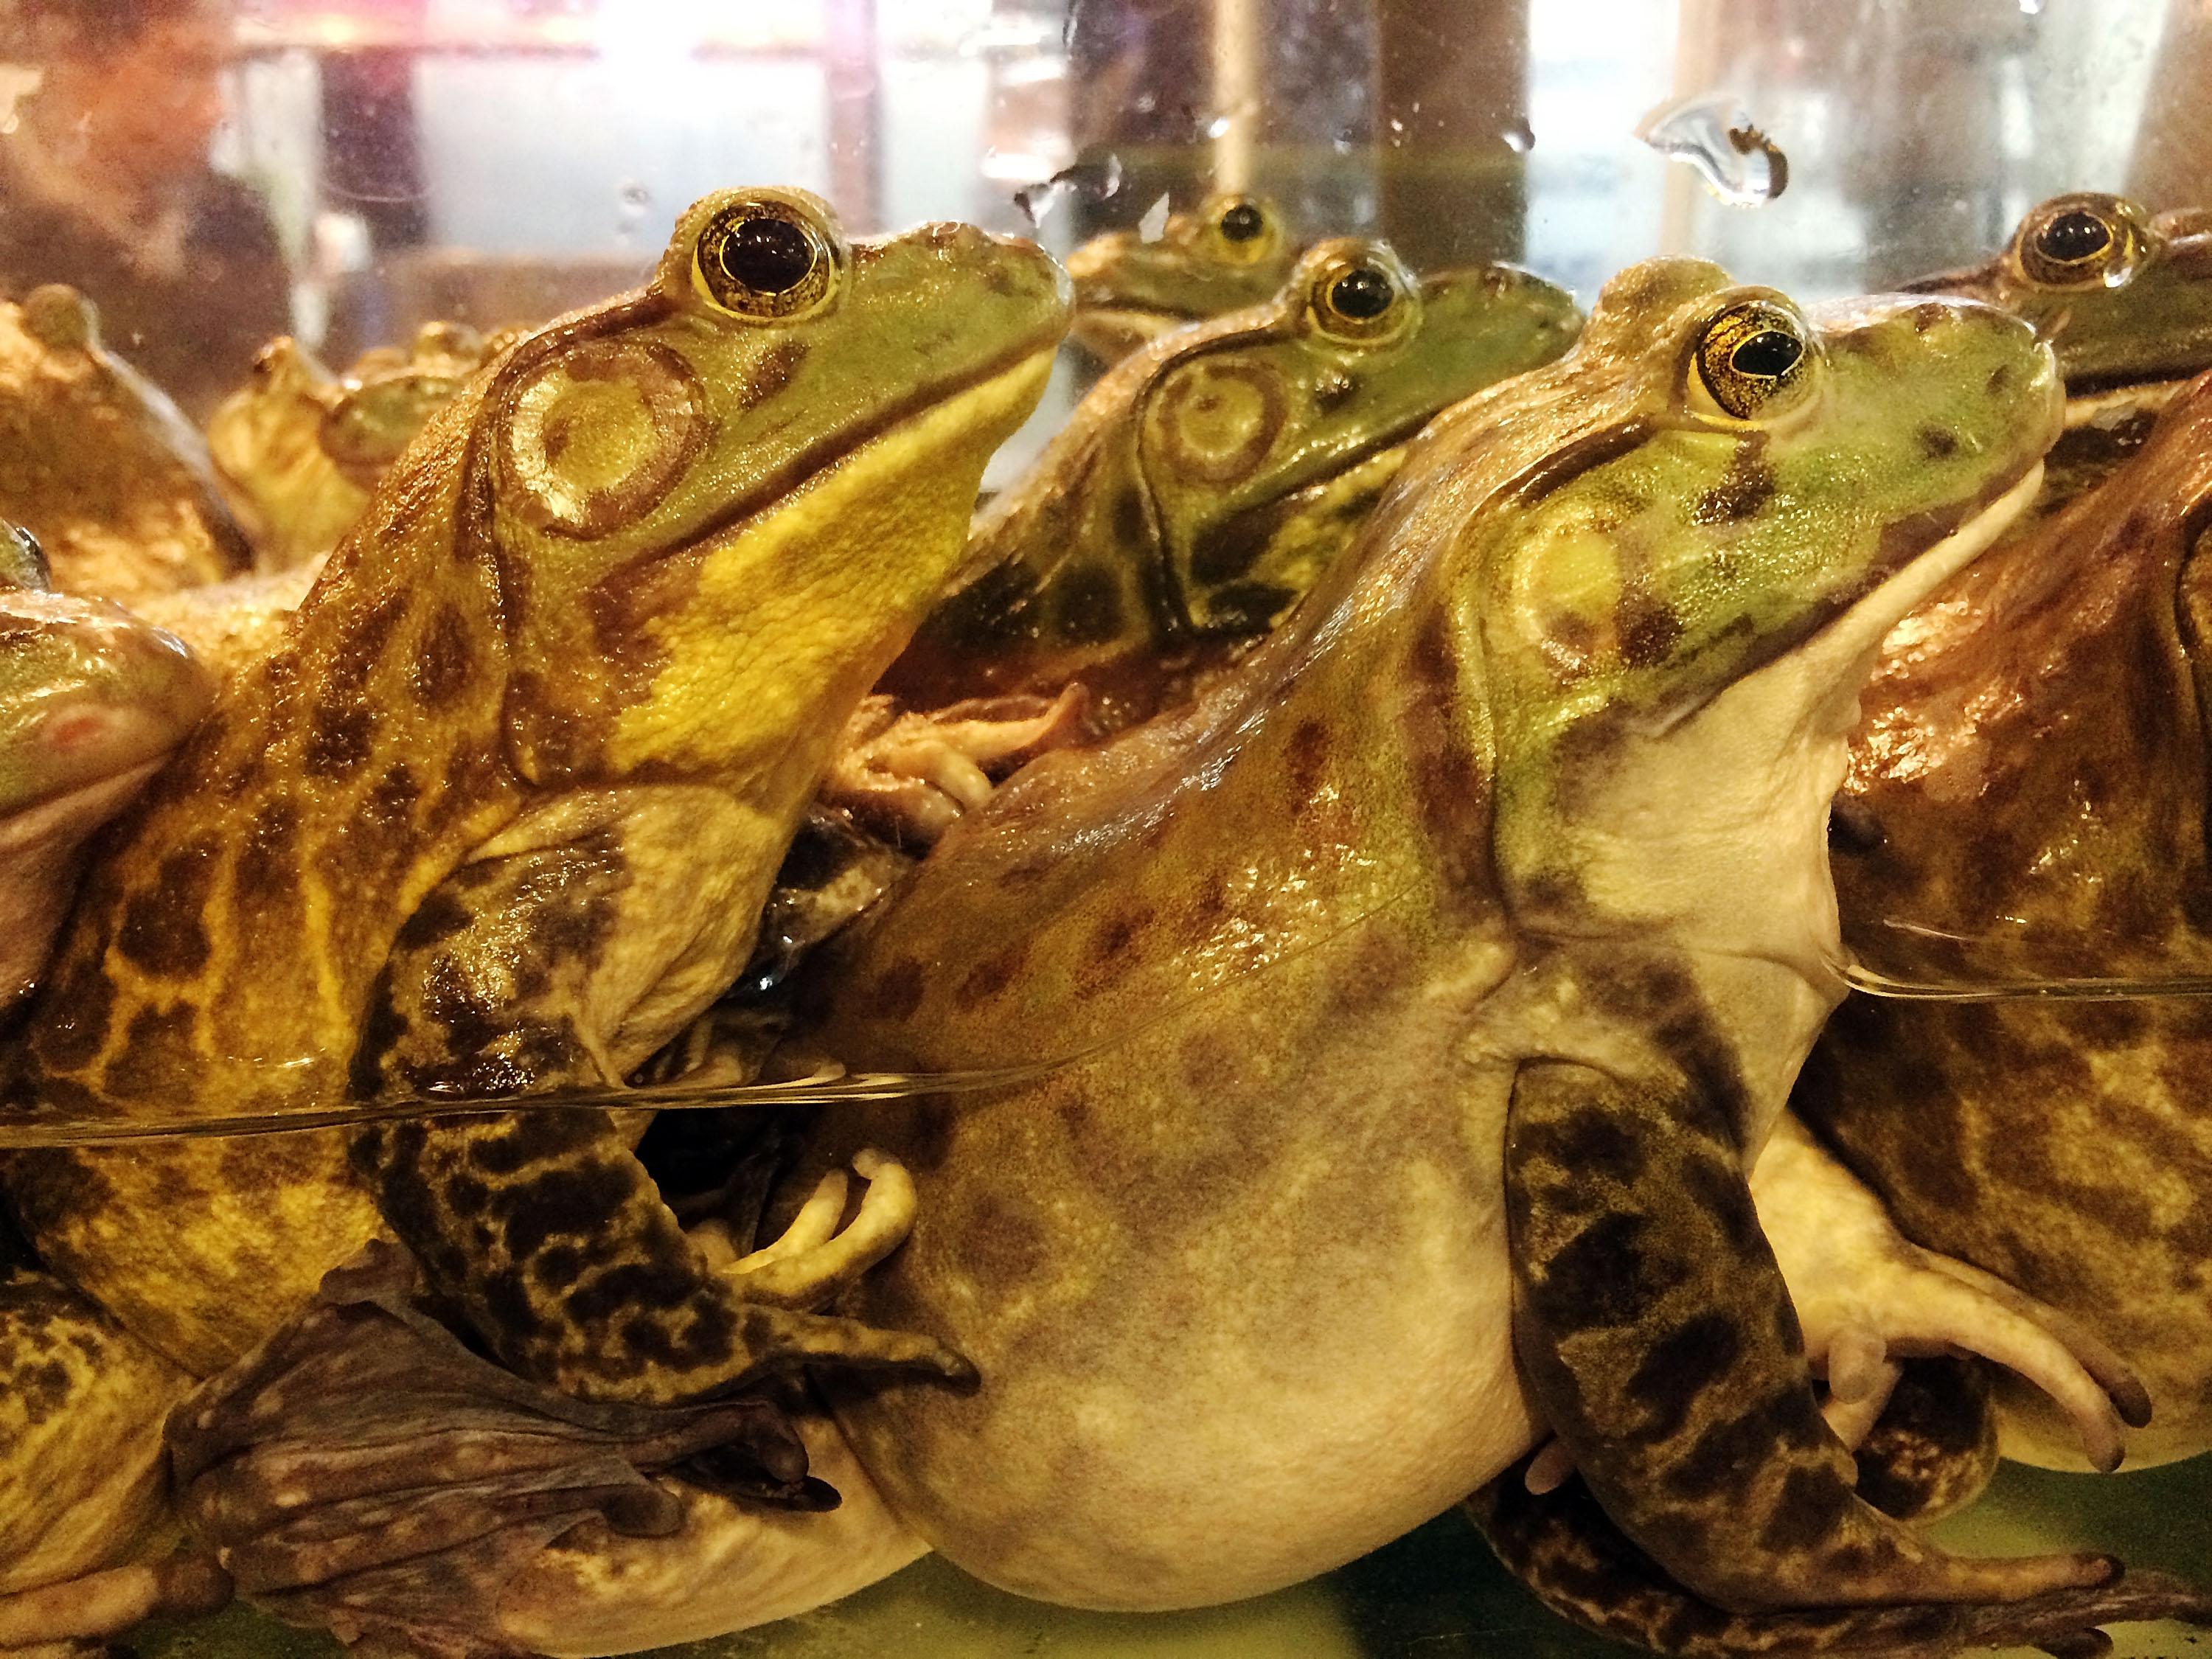 Spesies katak terancam kelaparan Belgia dan Prancis karena kaki katak